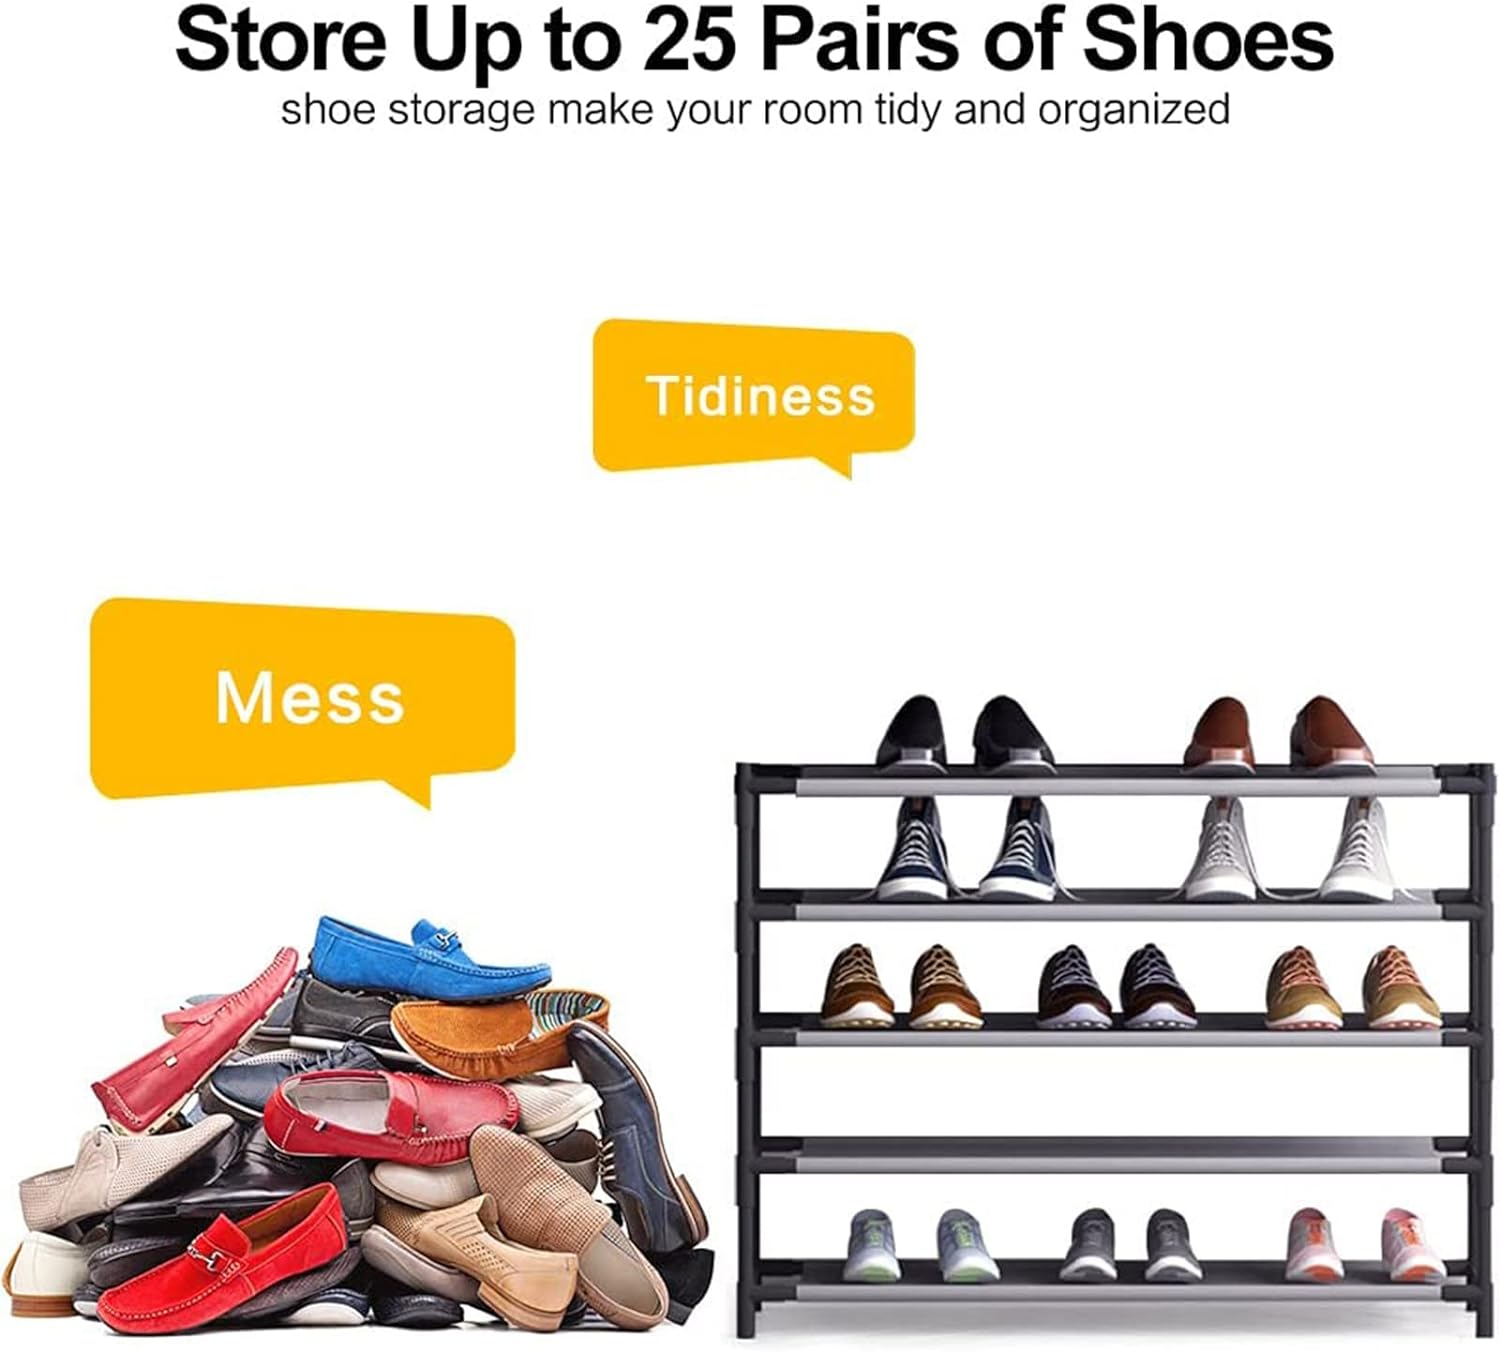 Zapatero grande de 5 niveles para 25 pares de zapatos, estante de zapatos que